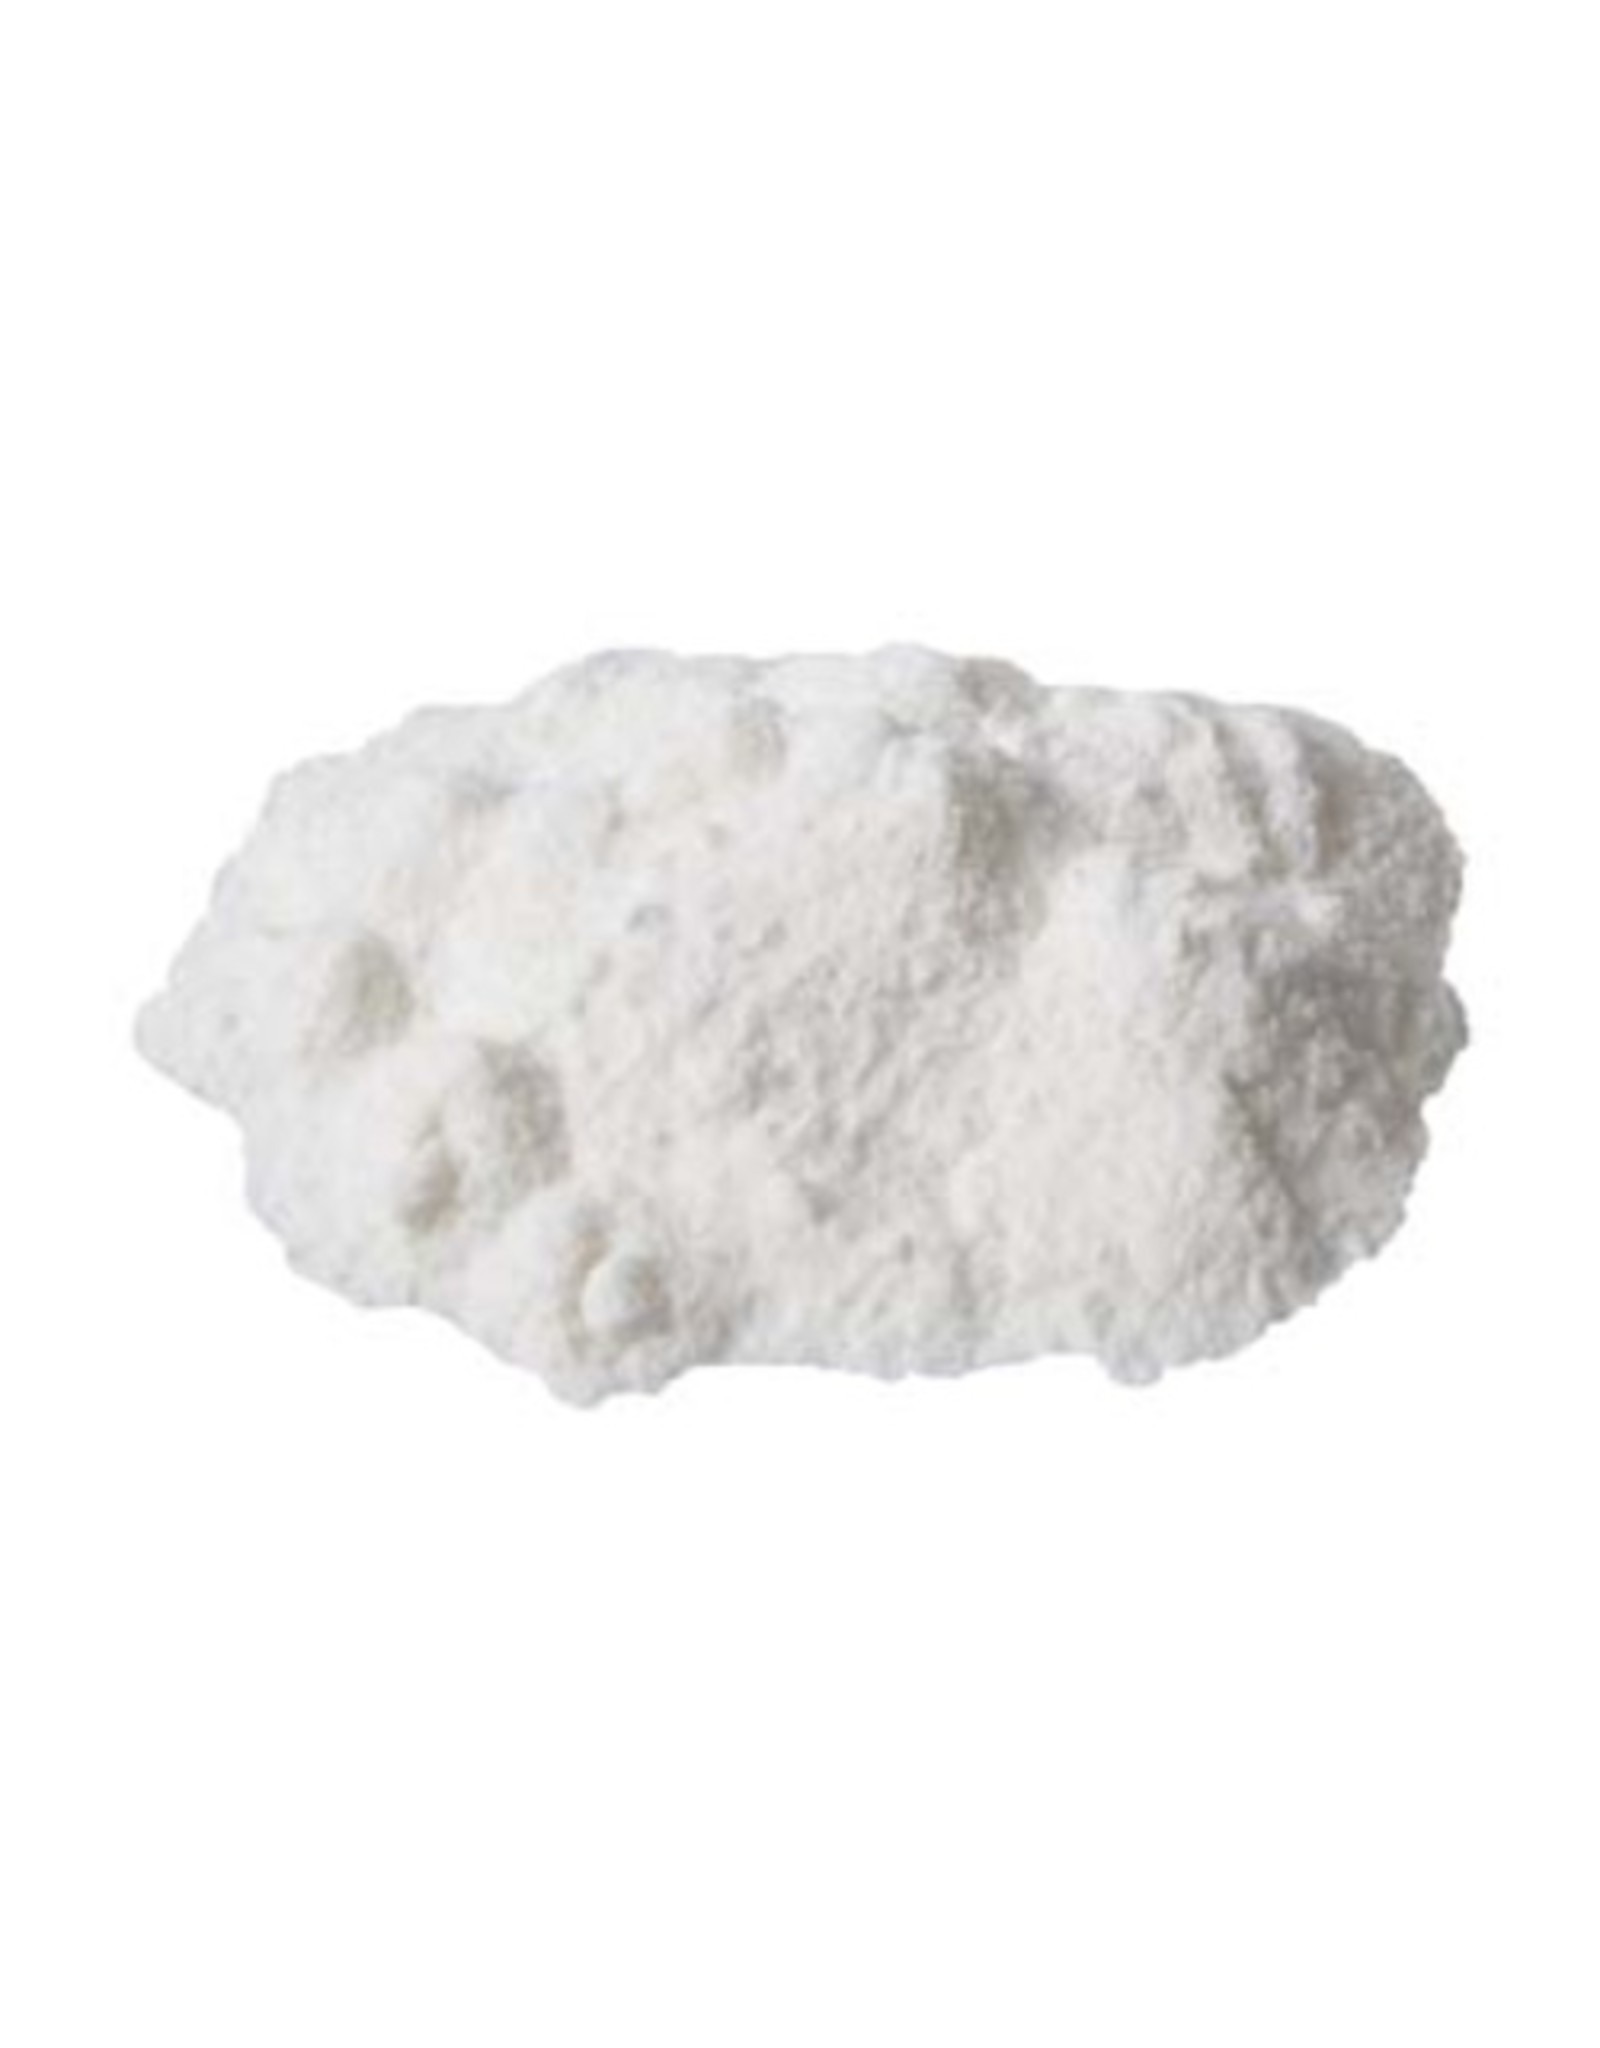 Gypsum (Calcium Sulfate) 50 LB Bag